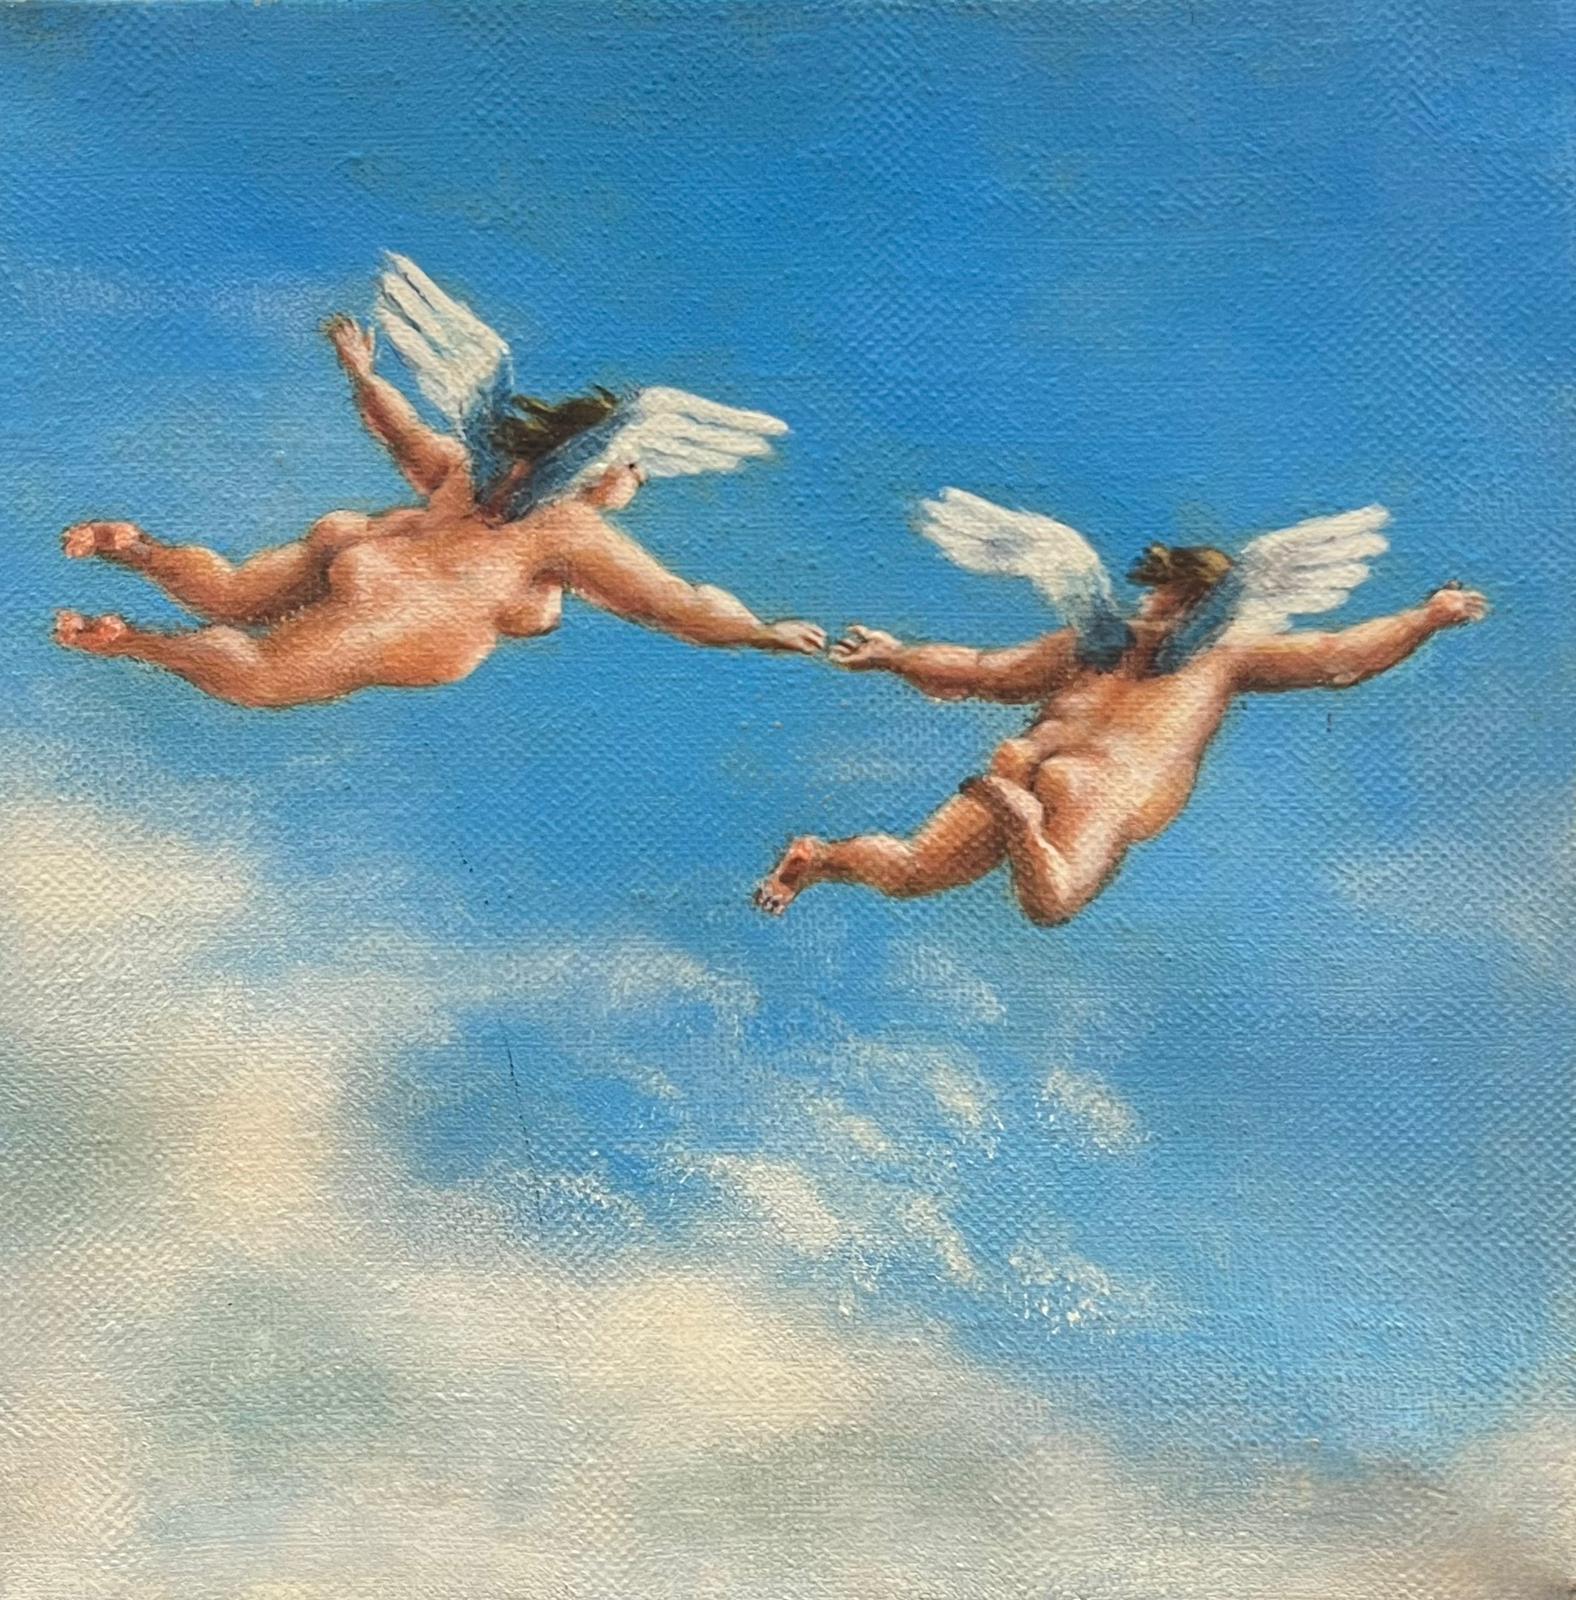 Nude Painting French School - Huile surréaliste française Chérubins ailés volant dans les nuages